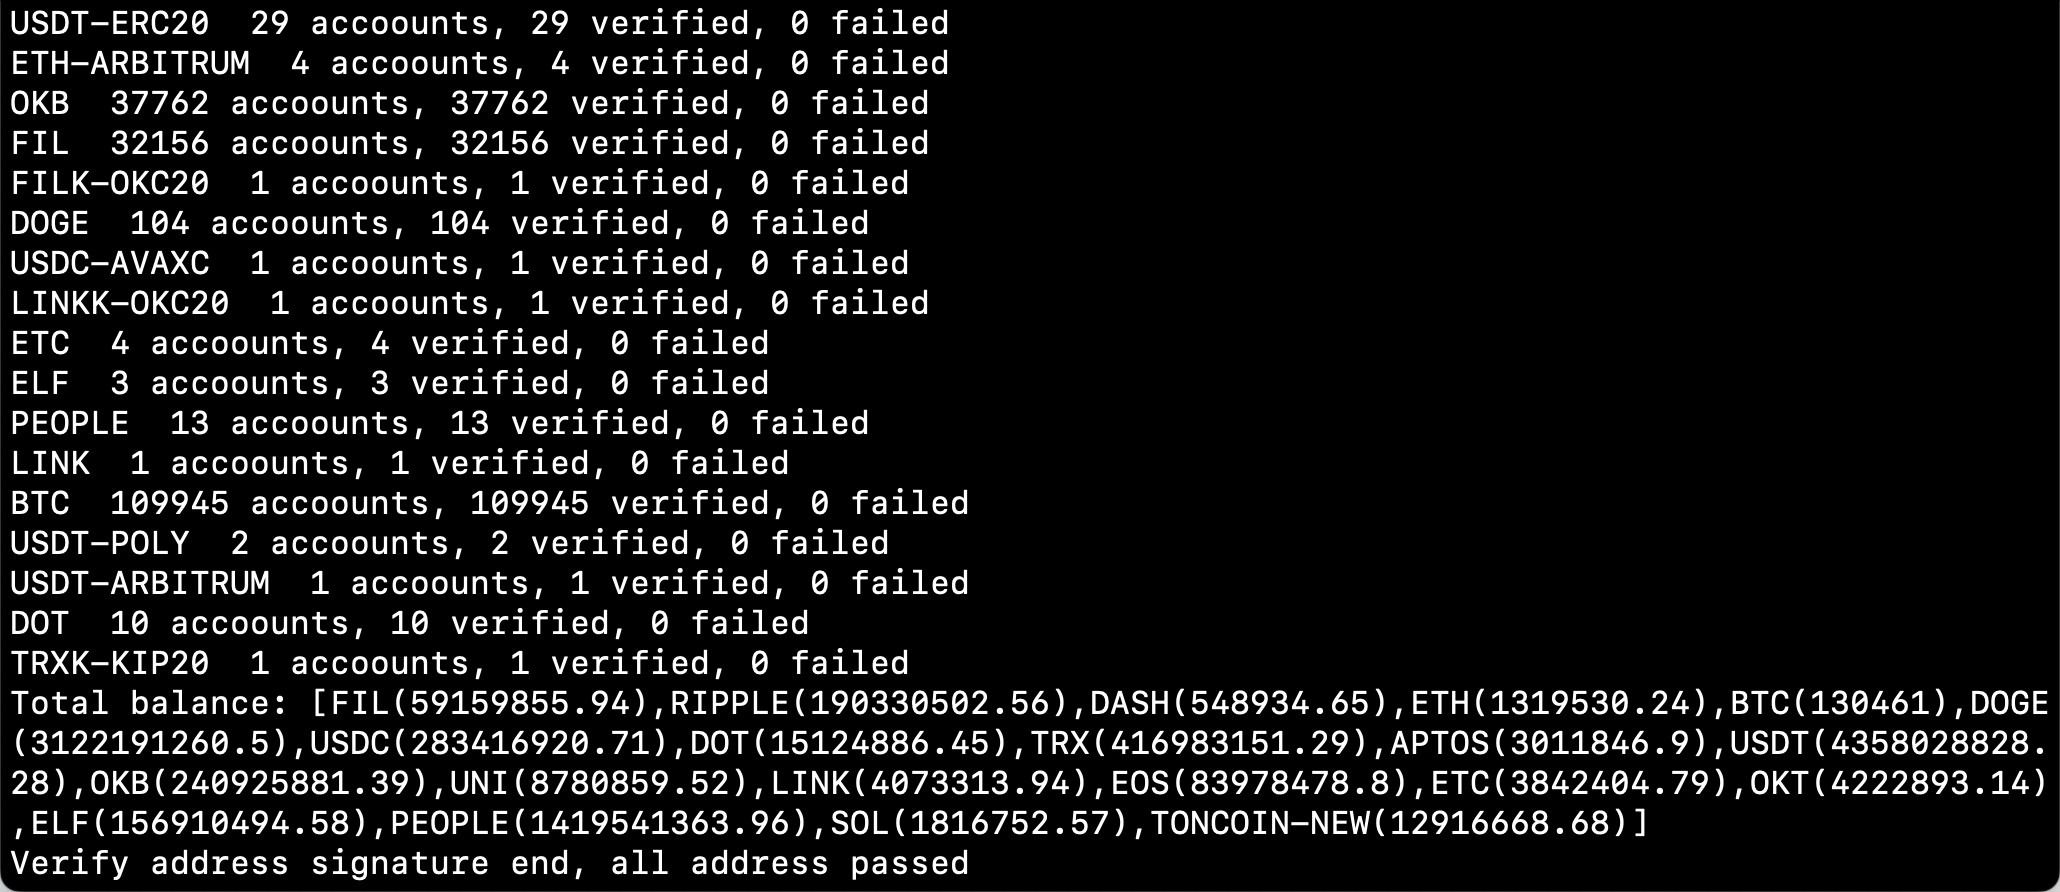 CT-web-POR-passed verification on terminal